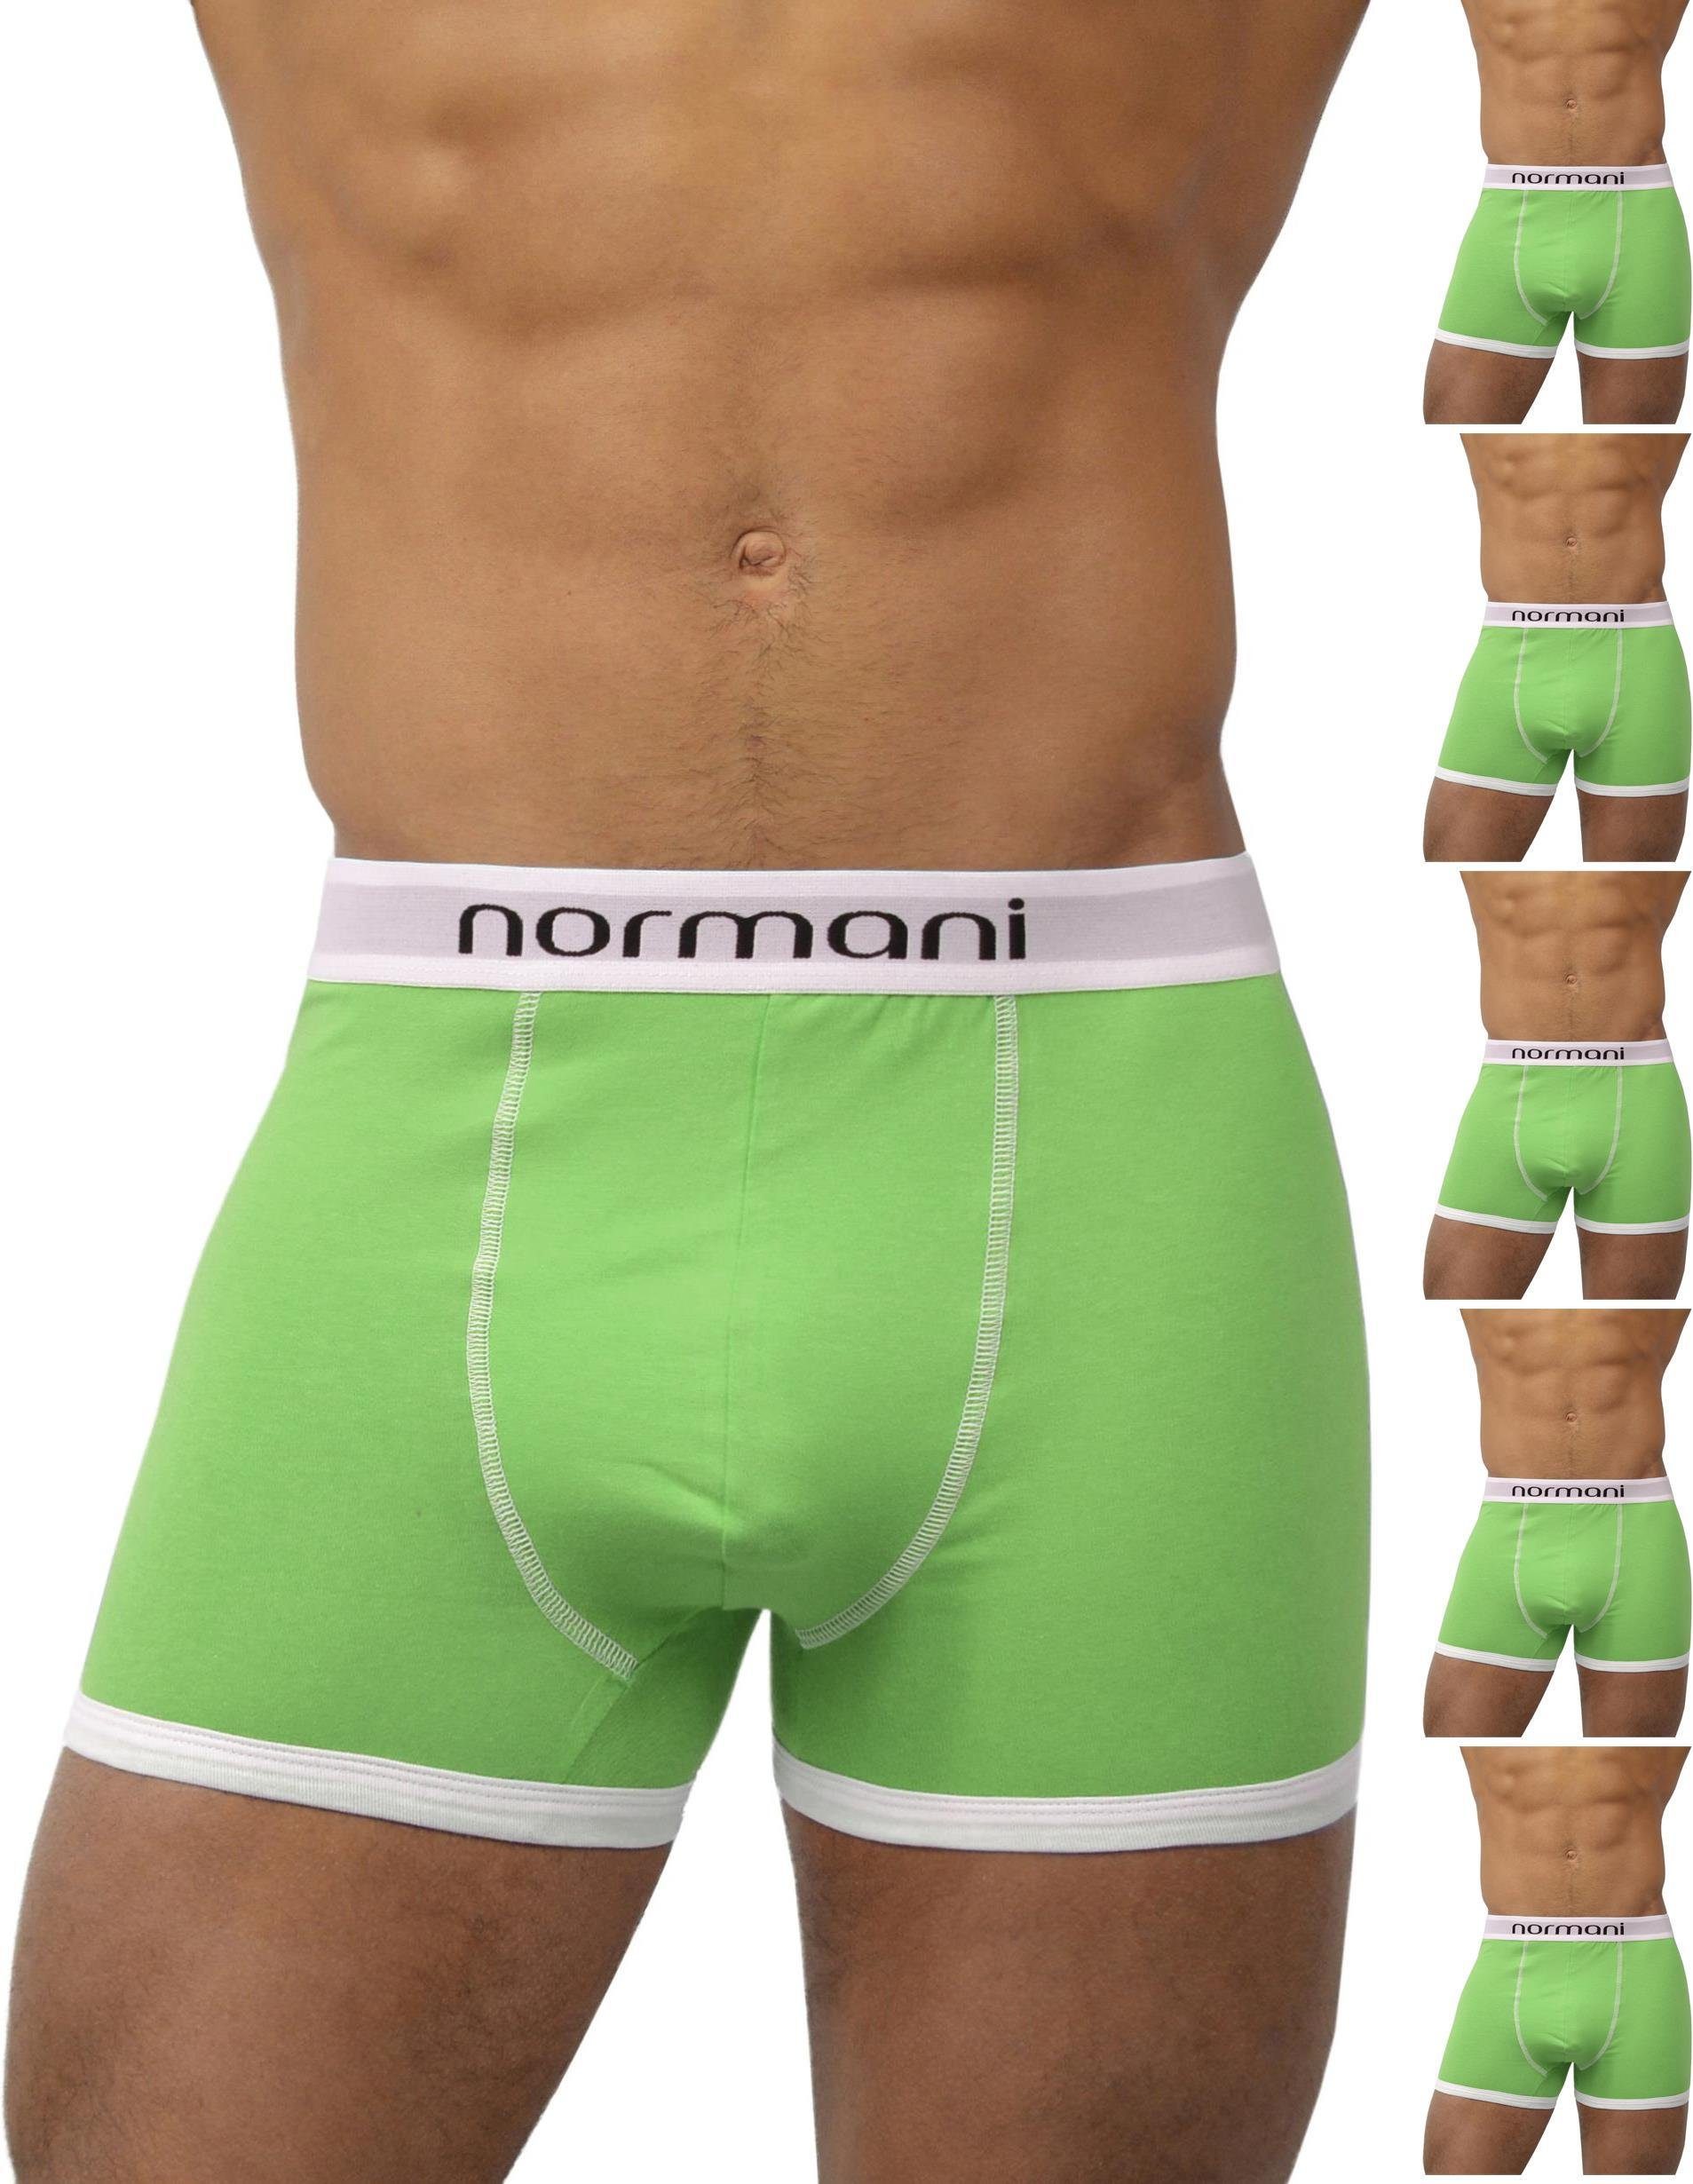 normani Retro Boxer 6 aus Retro Boxershorts aus Grün atmungsaktiver Unterhose Baumwolle Stück Baumwolle Retro